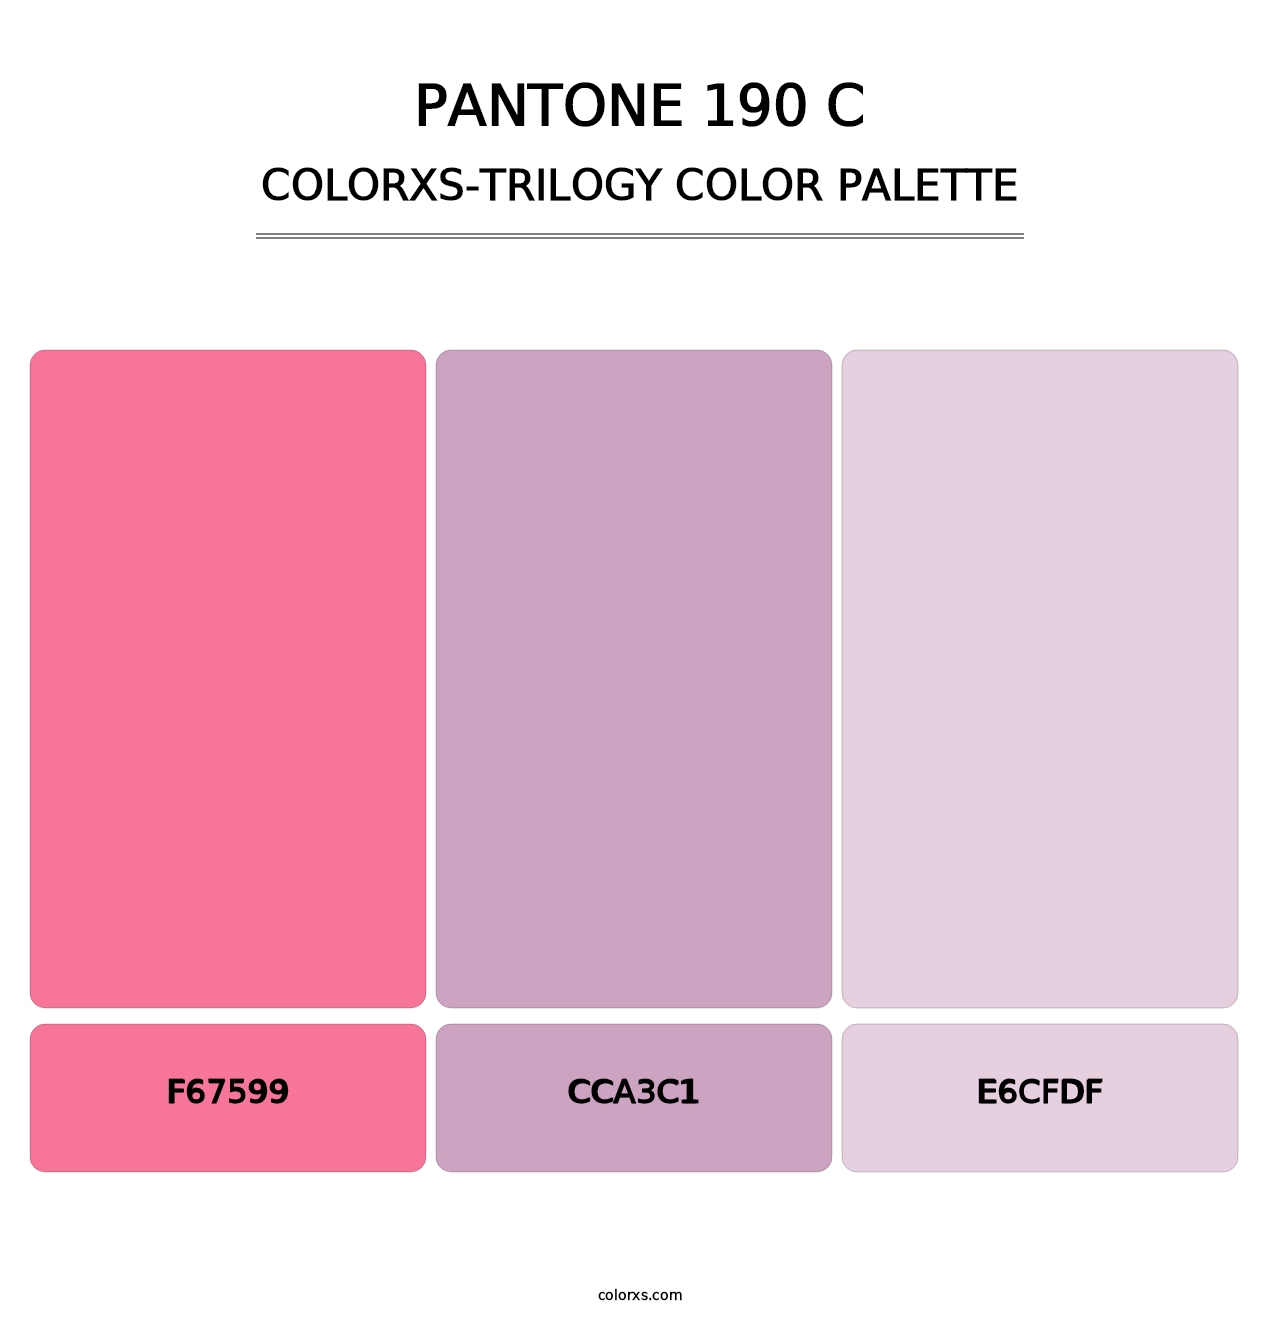 PANTONE 190 C - Colorxs Trilogy Palette